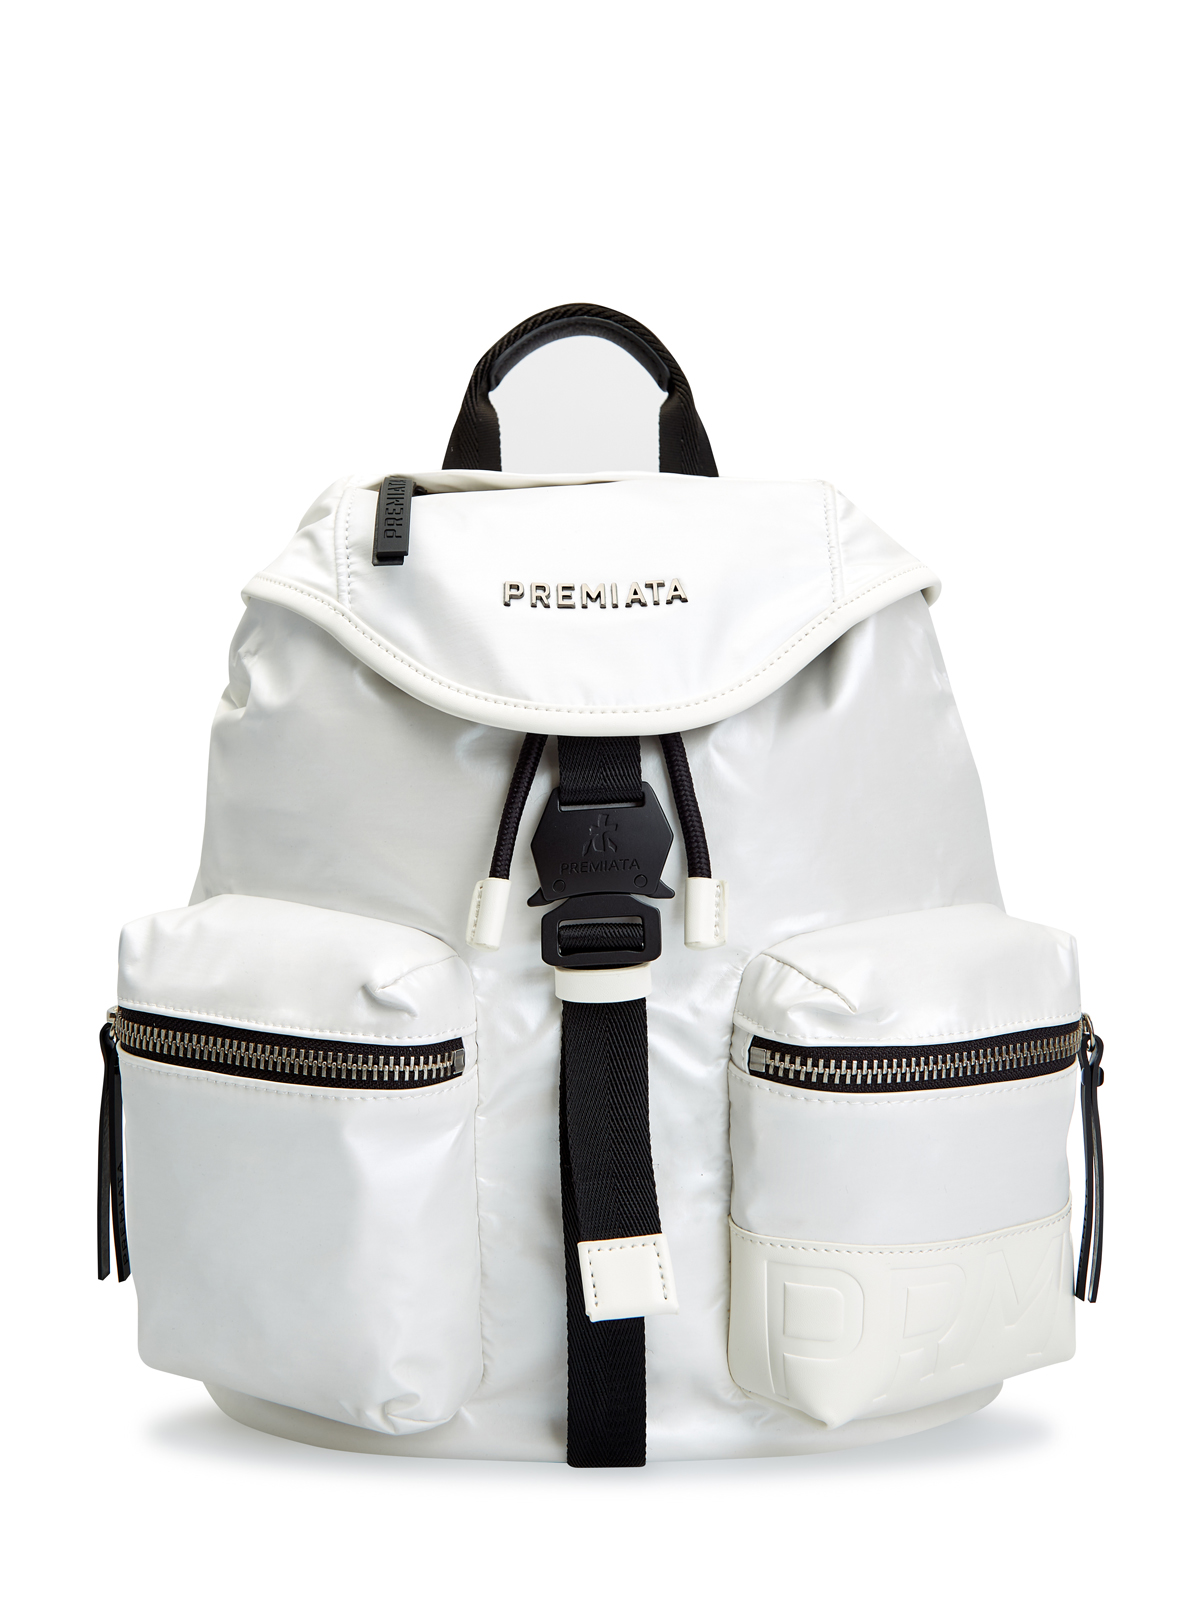 Функциональный рюкзак Lyn с кожаной отделкой и съемным ремнем PREMIATA, цвет белый, размер S;M